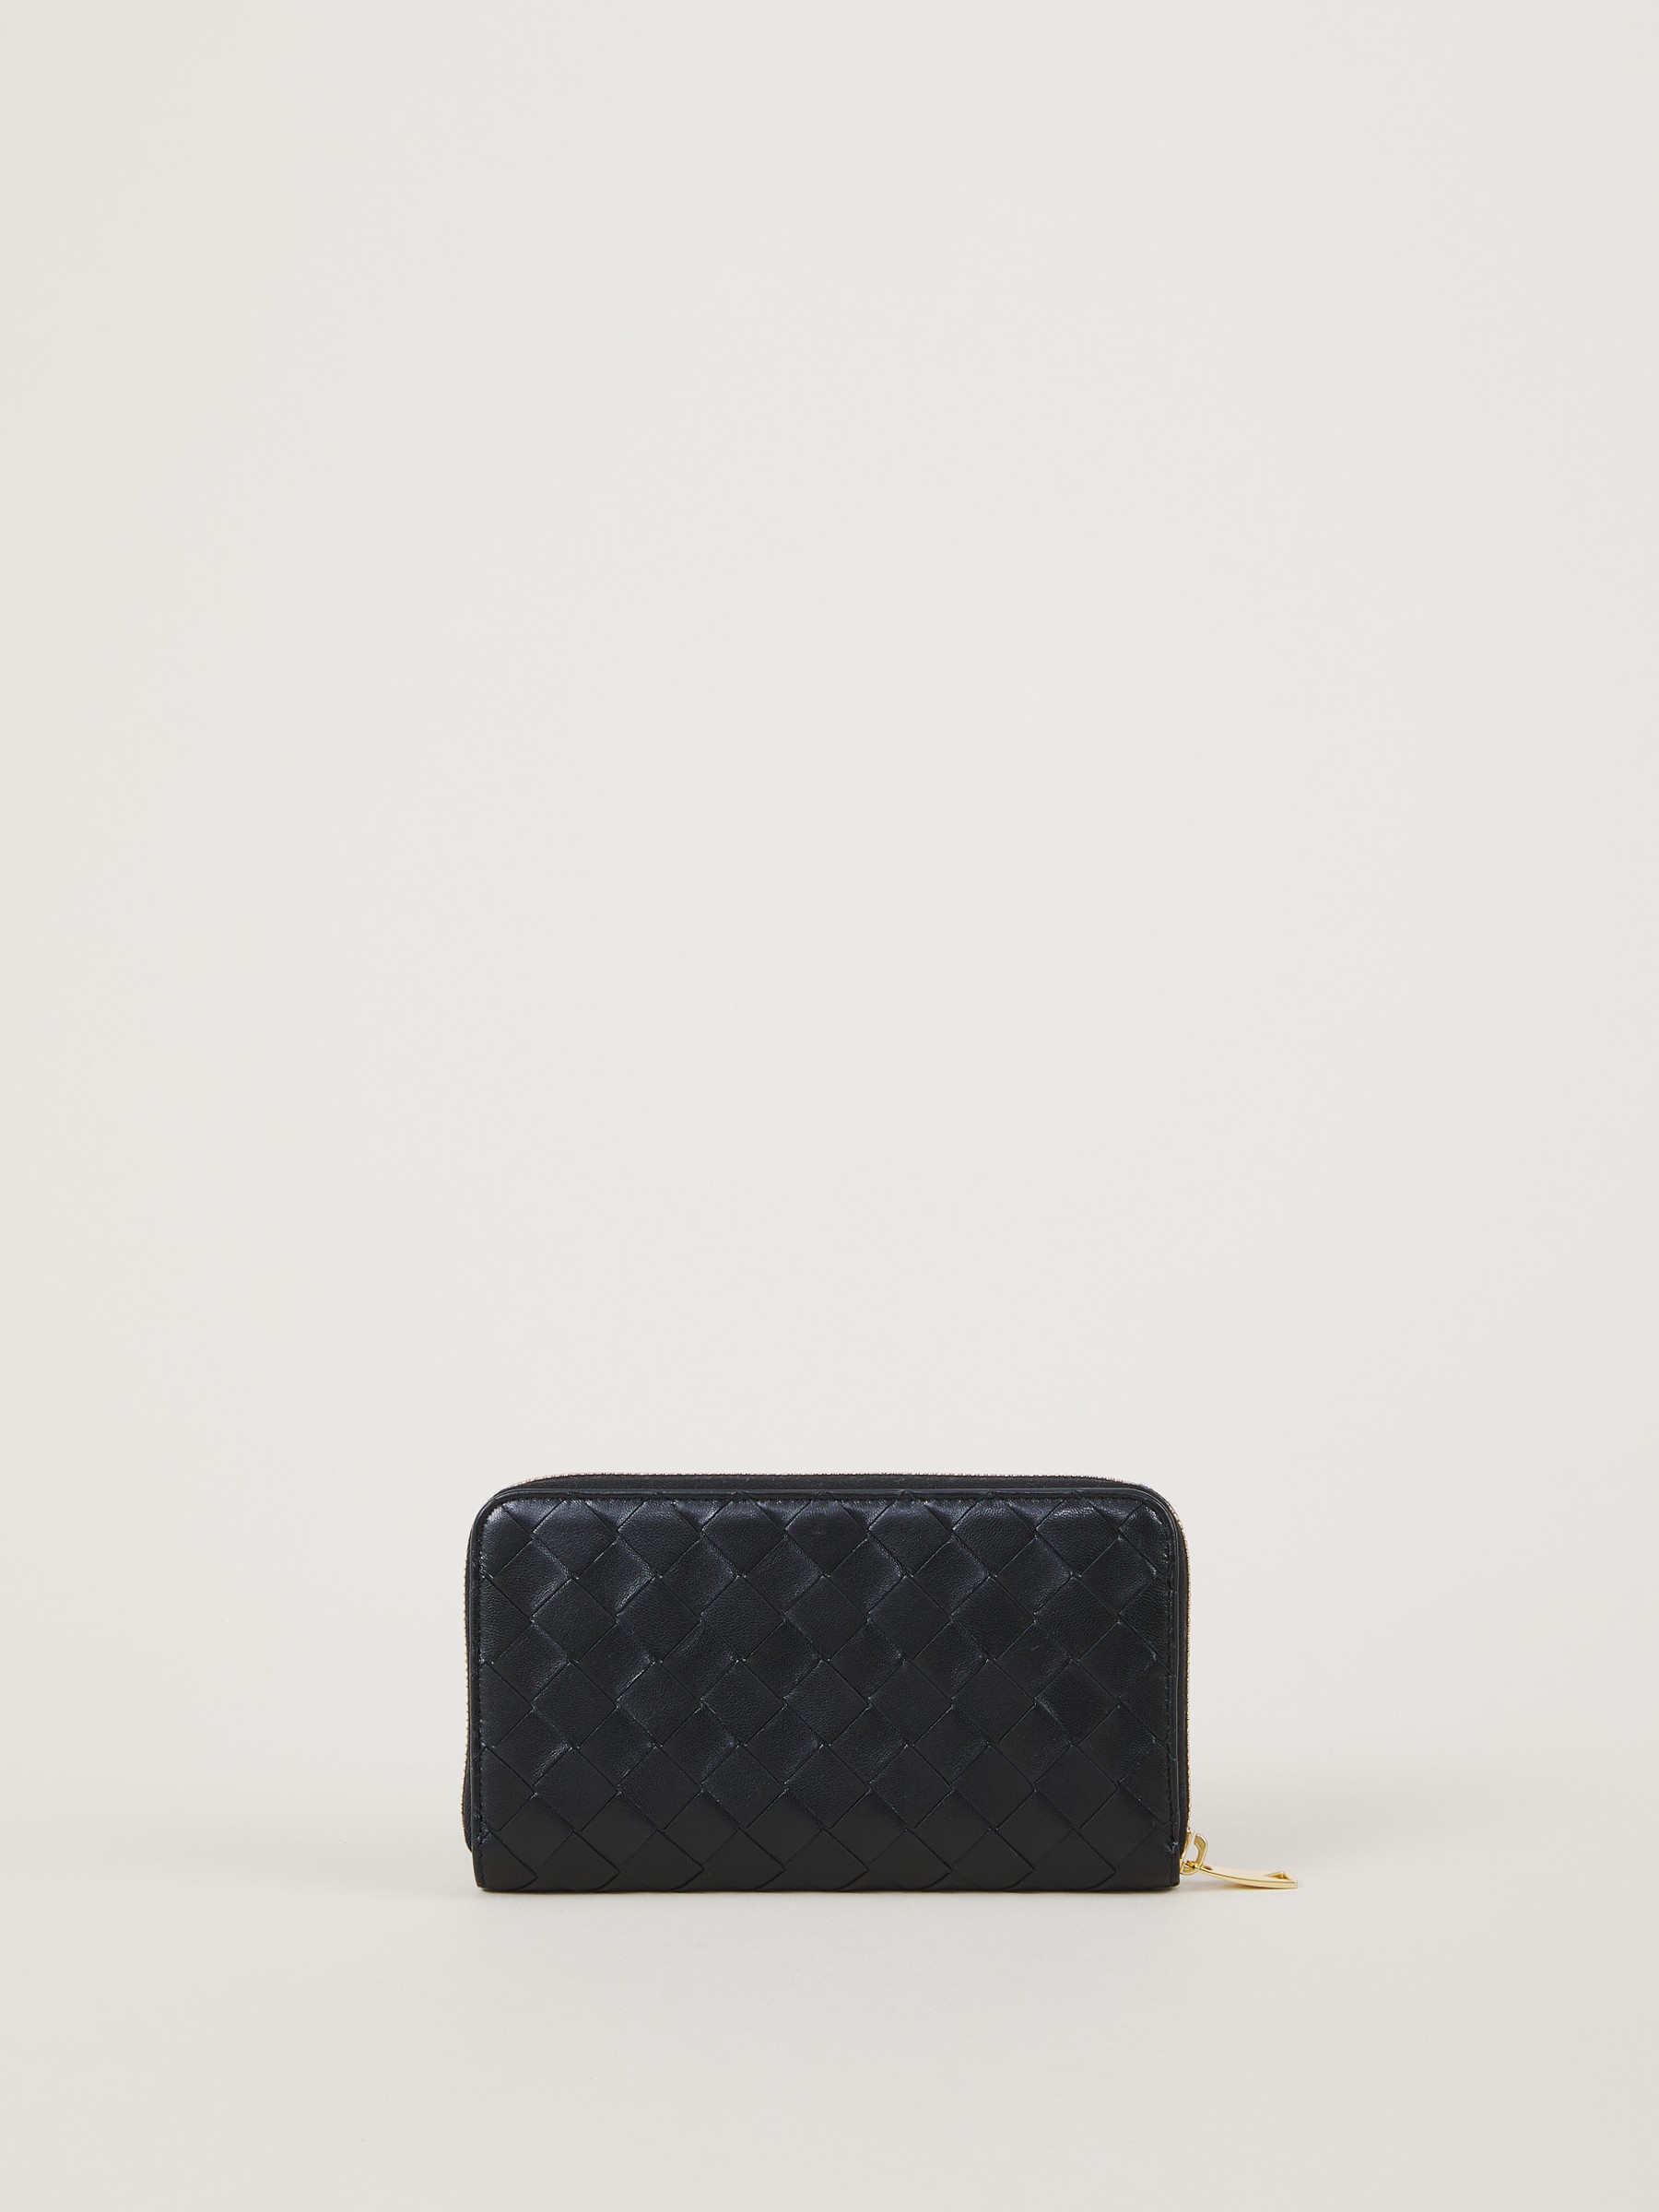 Intrecciato Leather Wallet in Black - Bottega Veneta